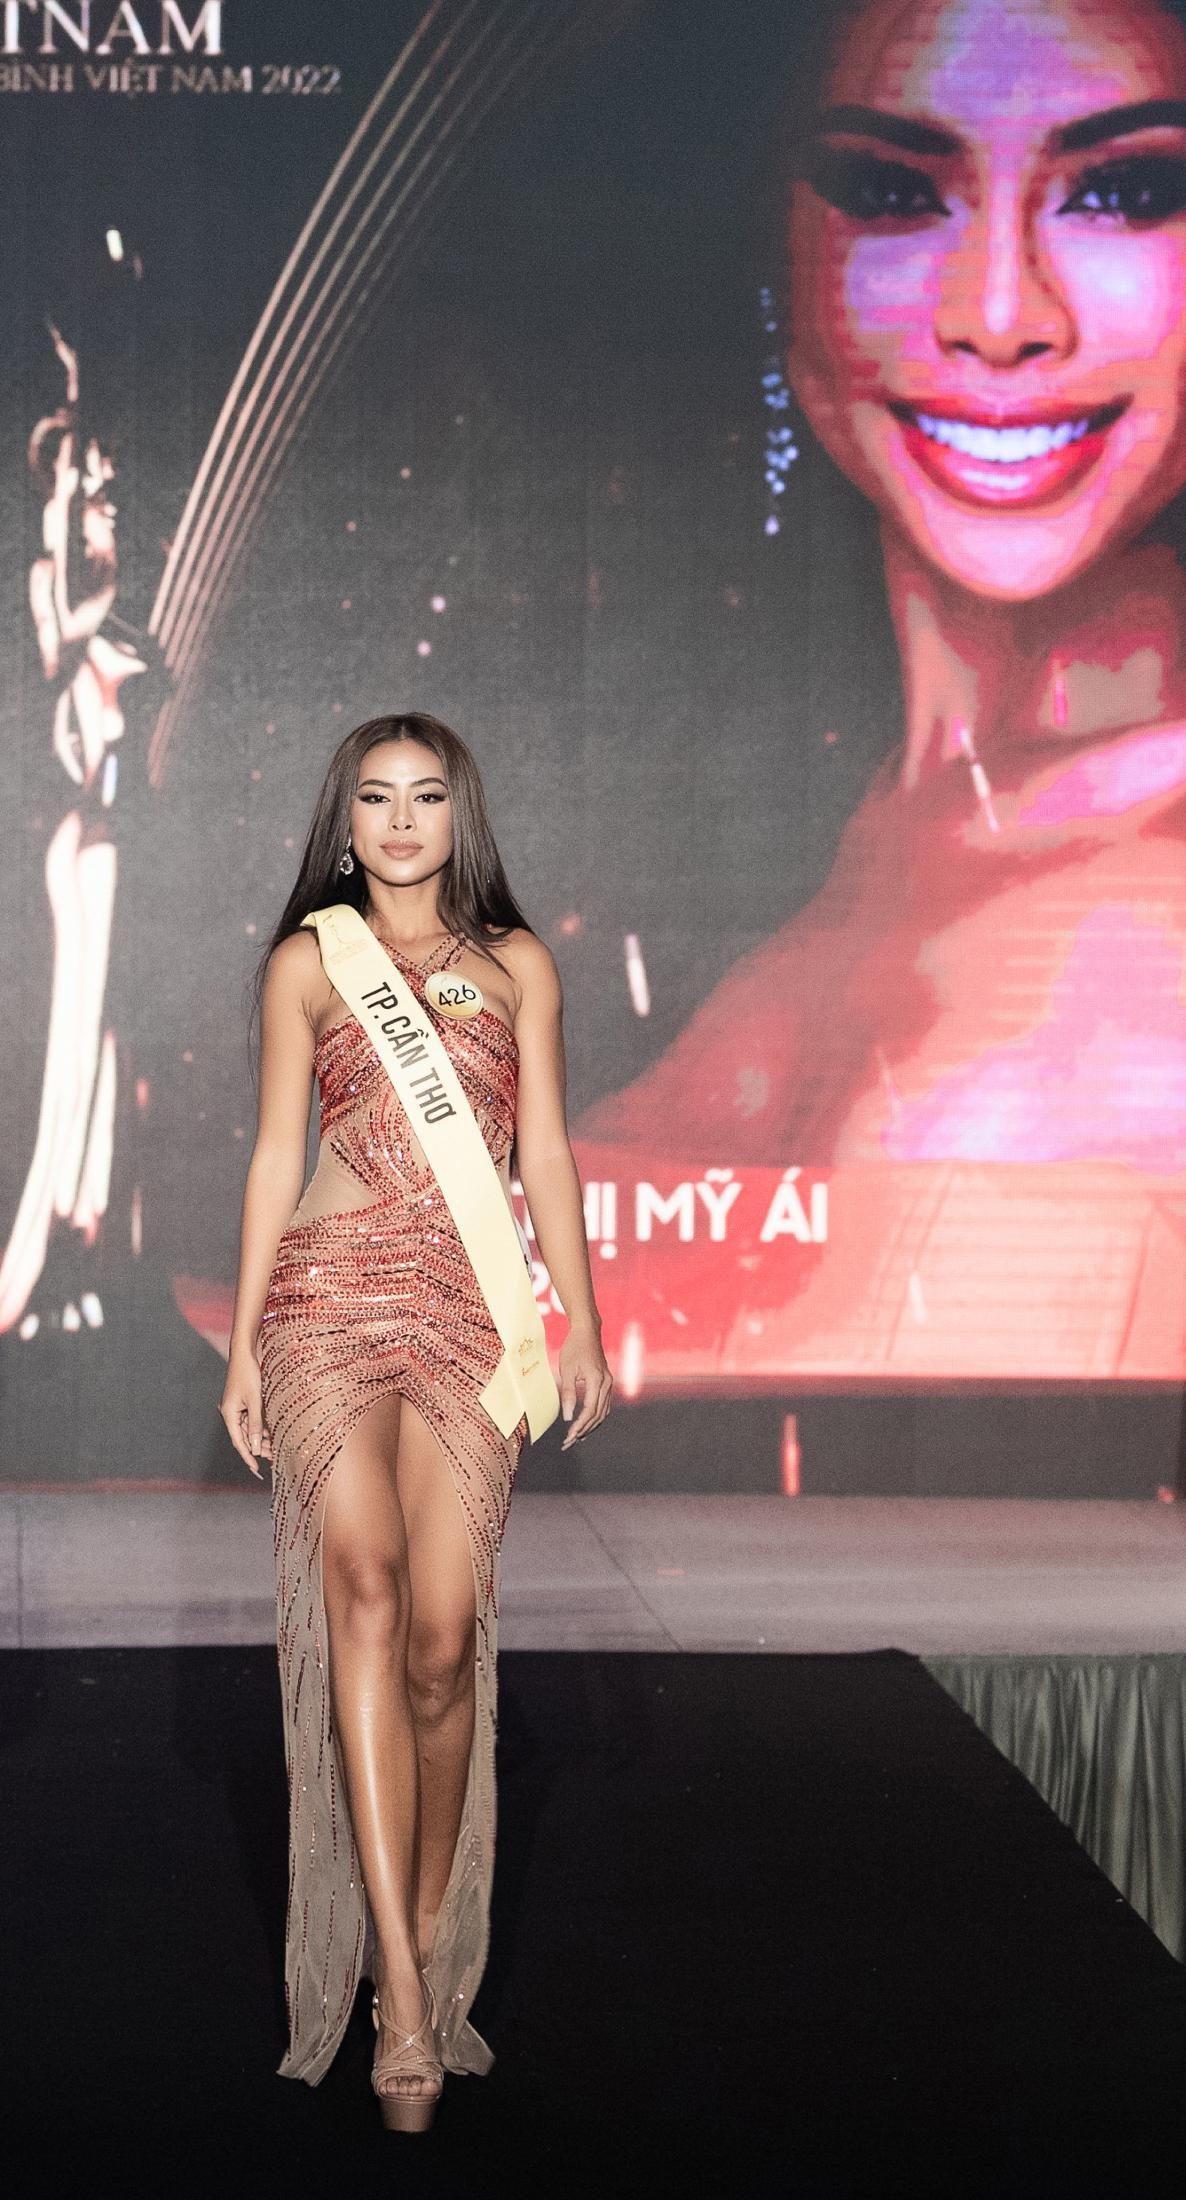 Mai Ngô, Quỳnh Châu tung chiêu catwalk độc đáo tại lễ nhận sash của Miss Grand Vietnam 2022 - Ảnh 7.